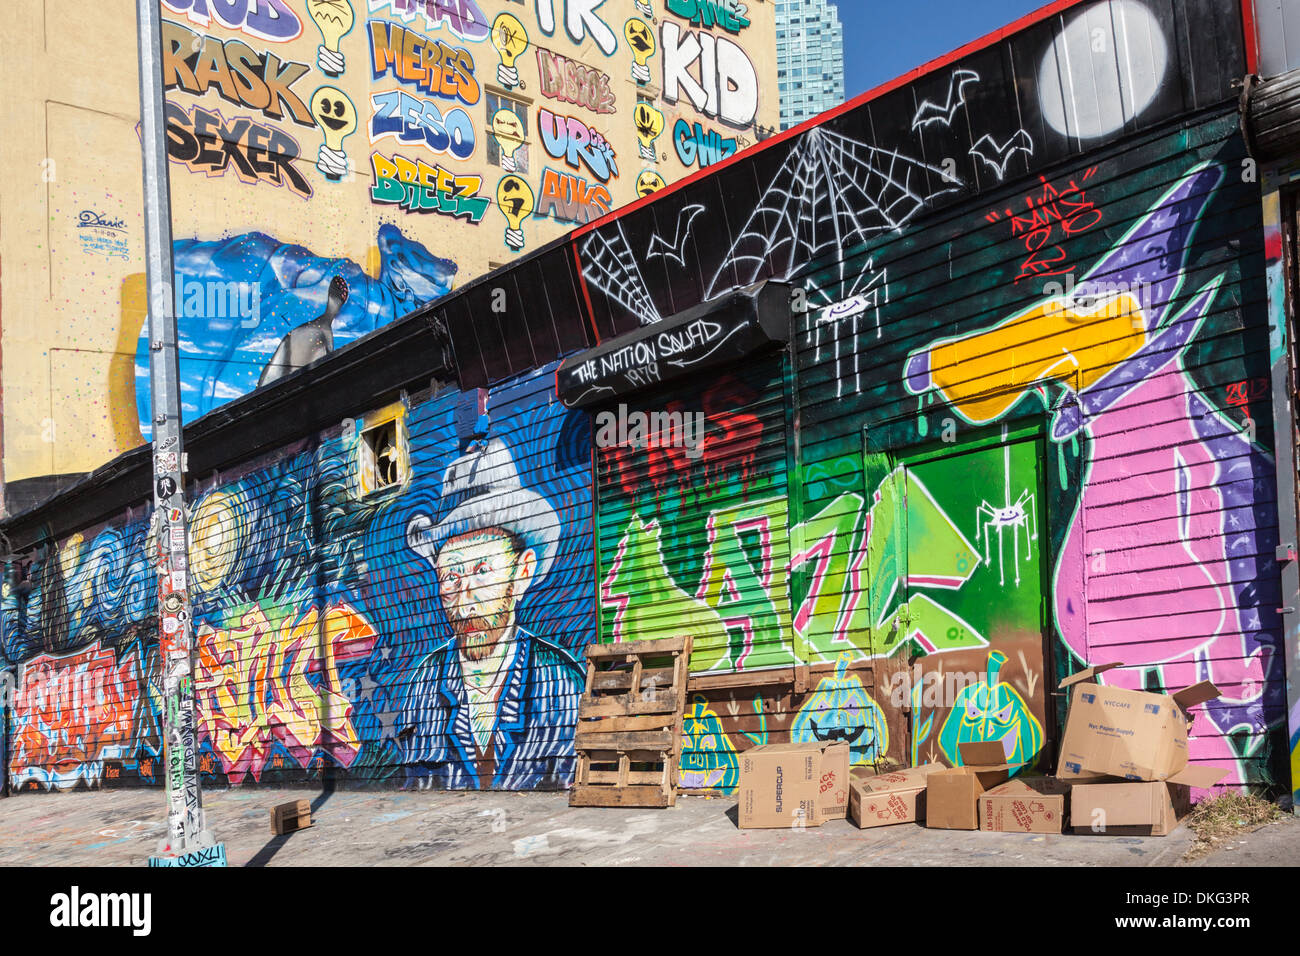 Pointz cinq était un aimant pour les artistes graffiti, Long Island City, Queens, New York. Démoli Novembre 2013. Banque D'Images